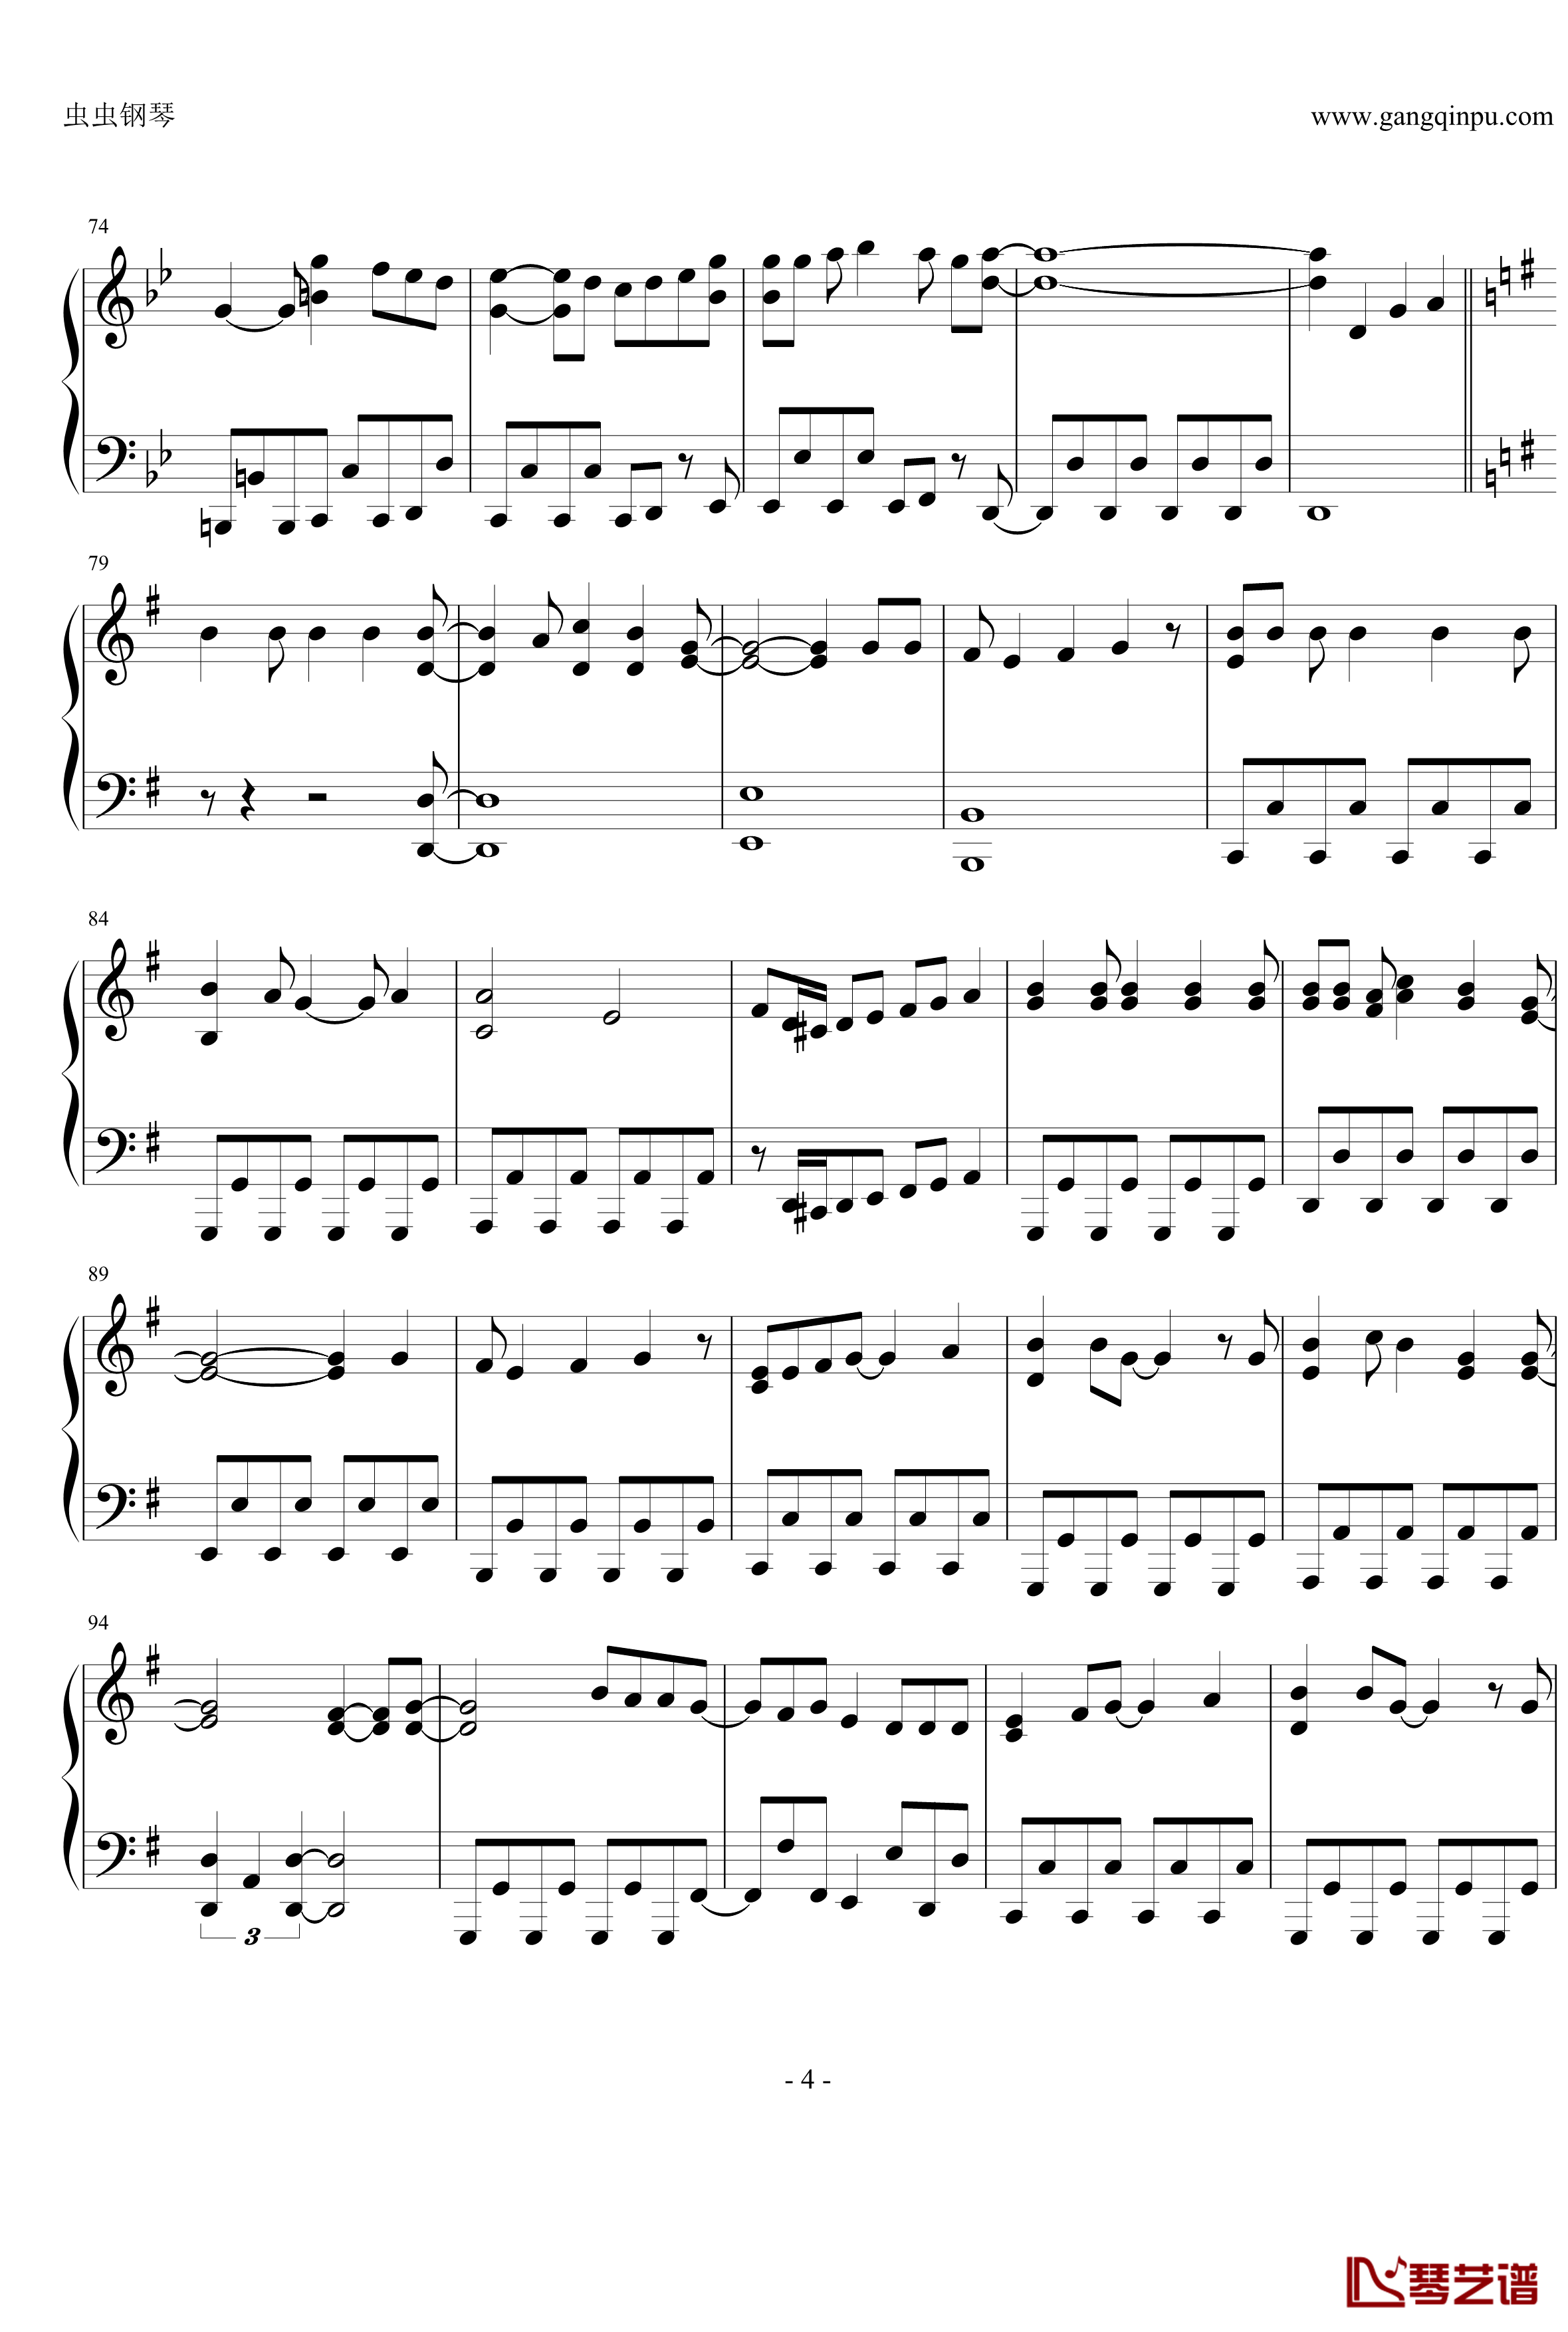 オーマイガー钢琴谱-修订完善版-NMB484